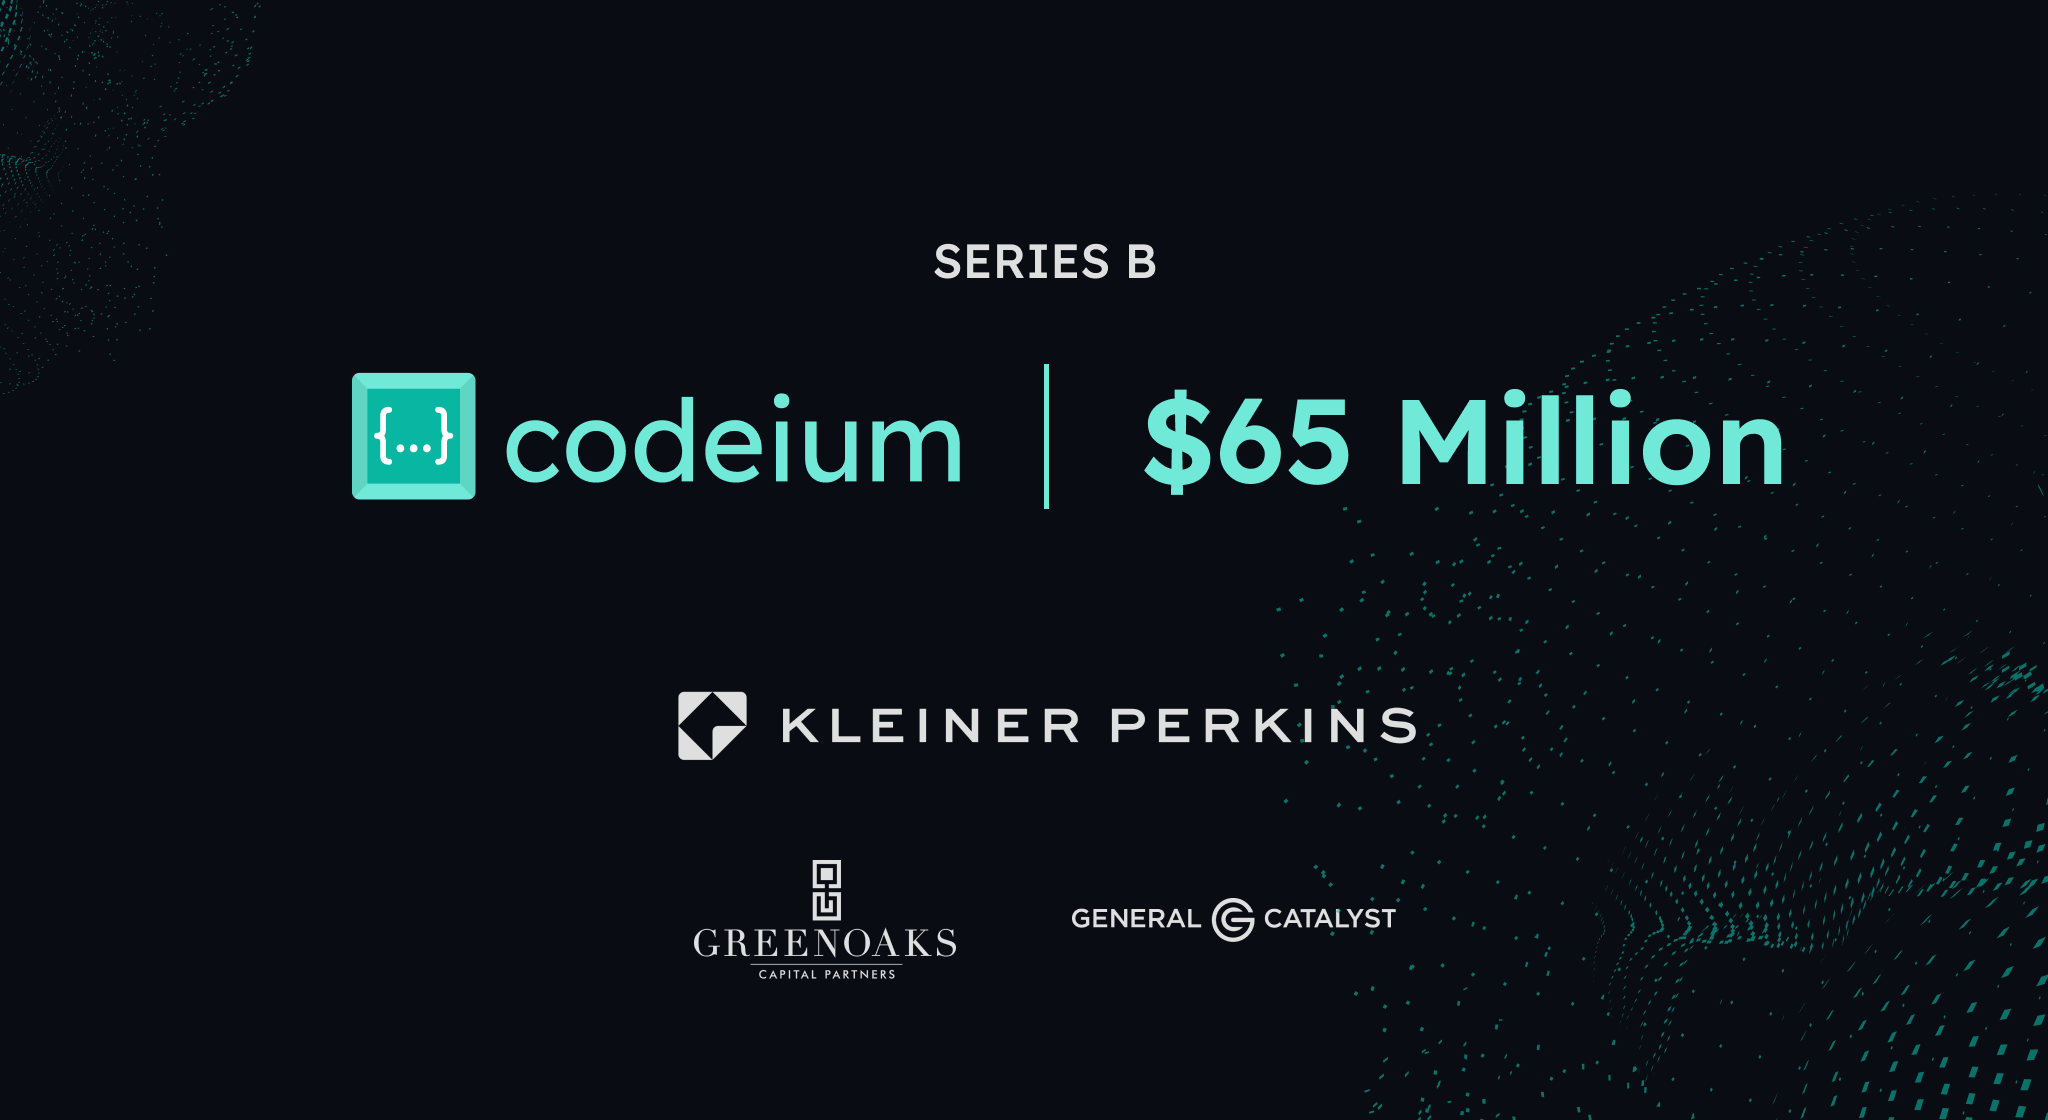 codeium series B funding announcement